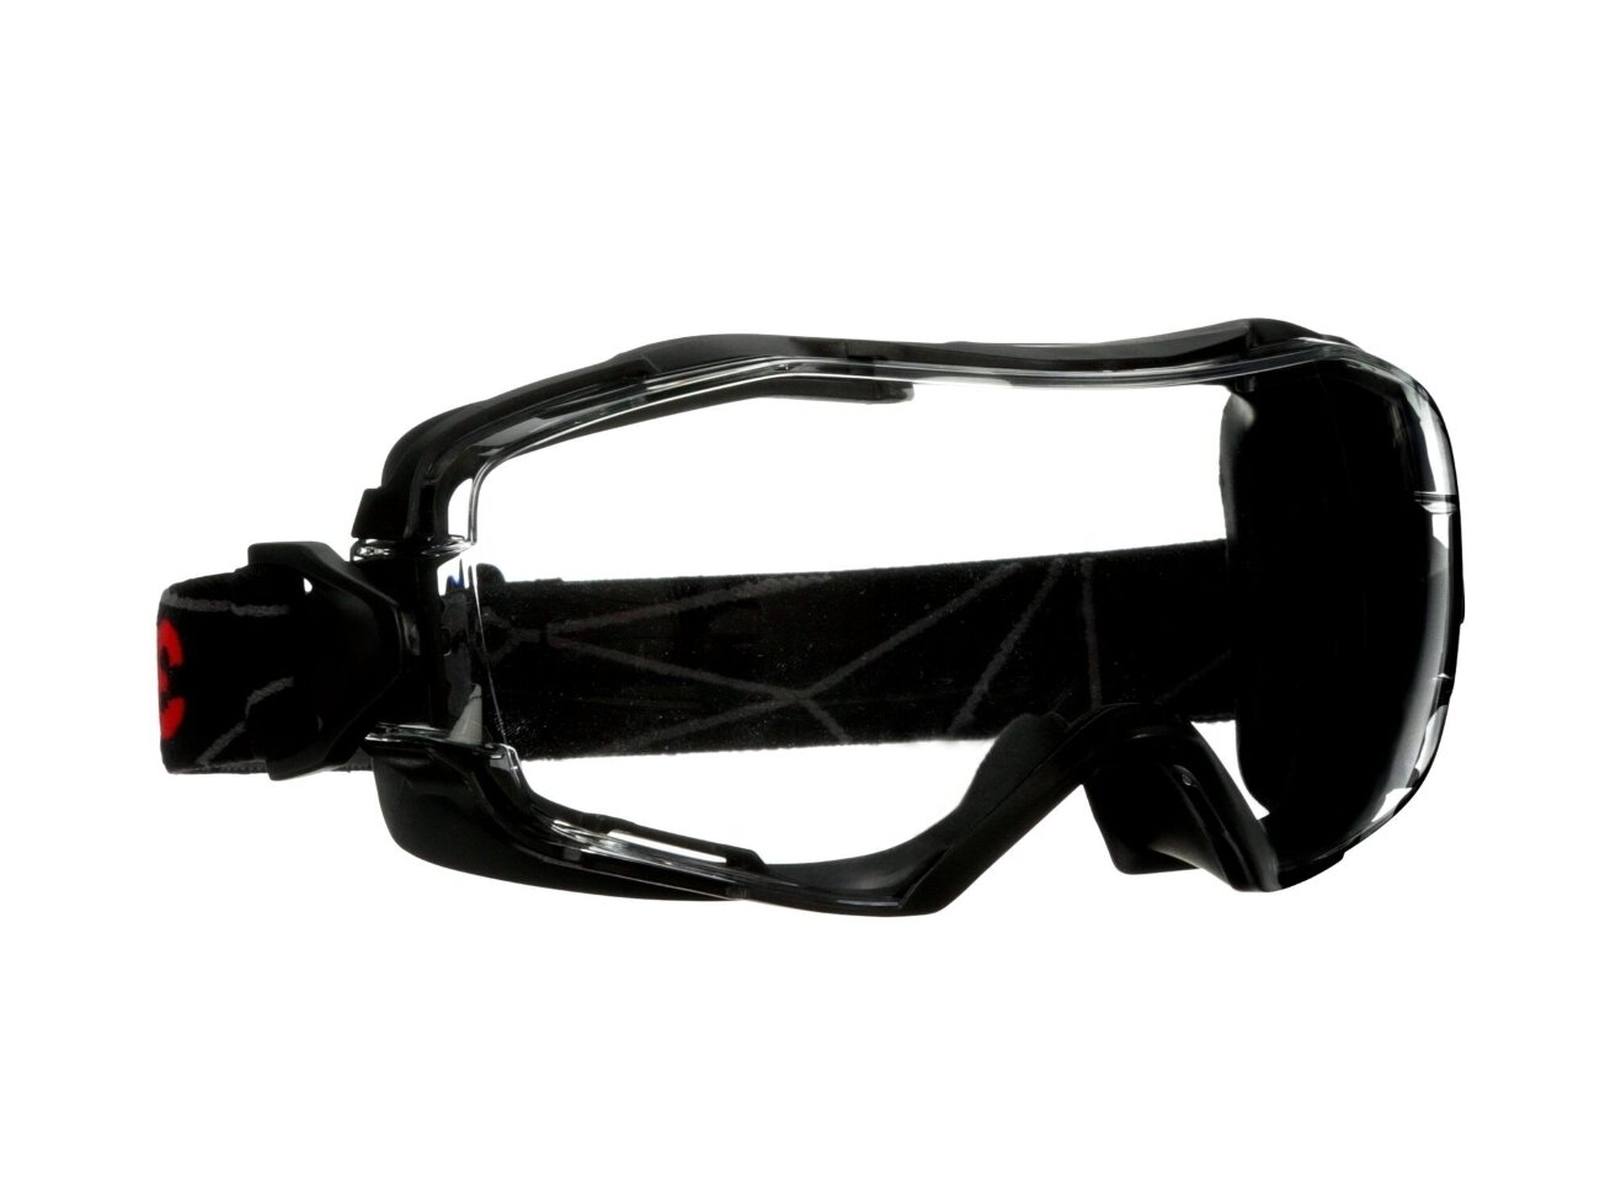 Occhiali a visione totale 3M GoggleGear 6000, montatura nera, rivestimento Scotchgard antiappannamento/antigraffio (K